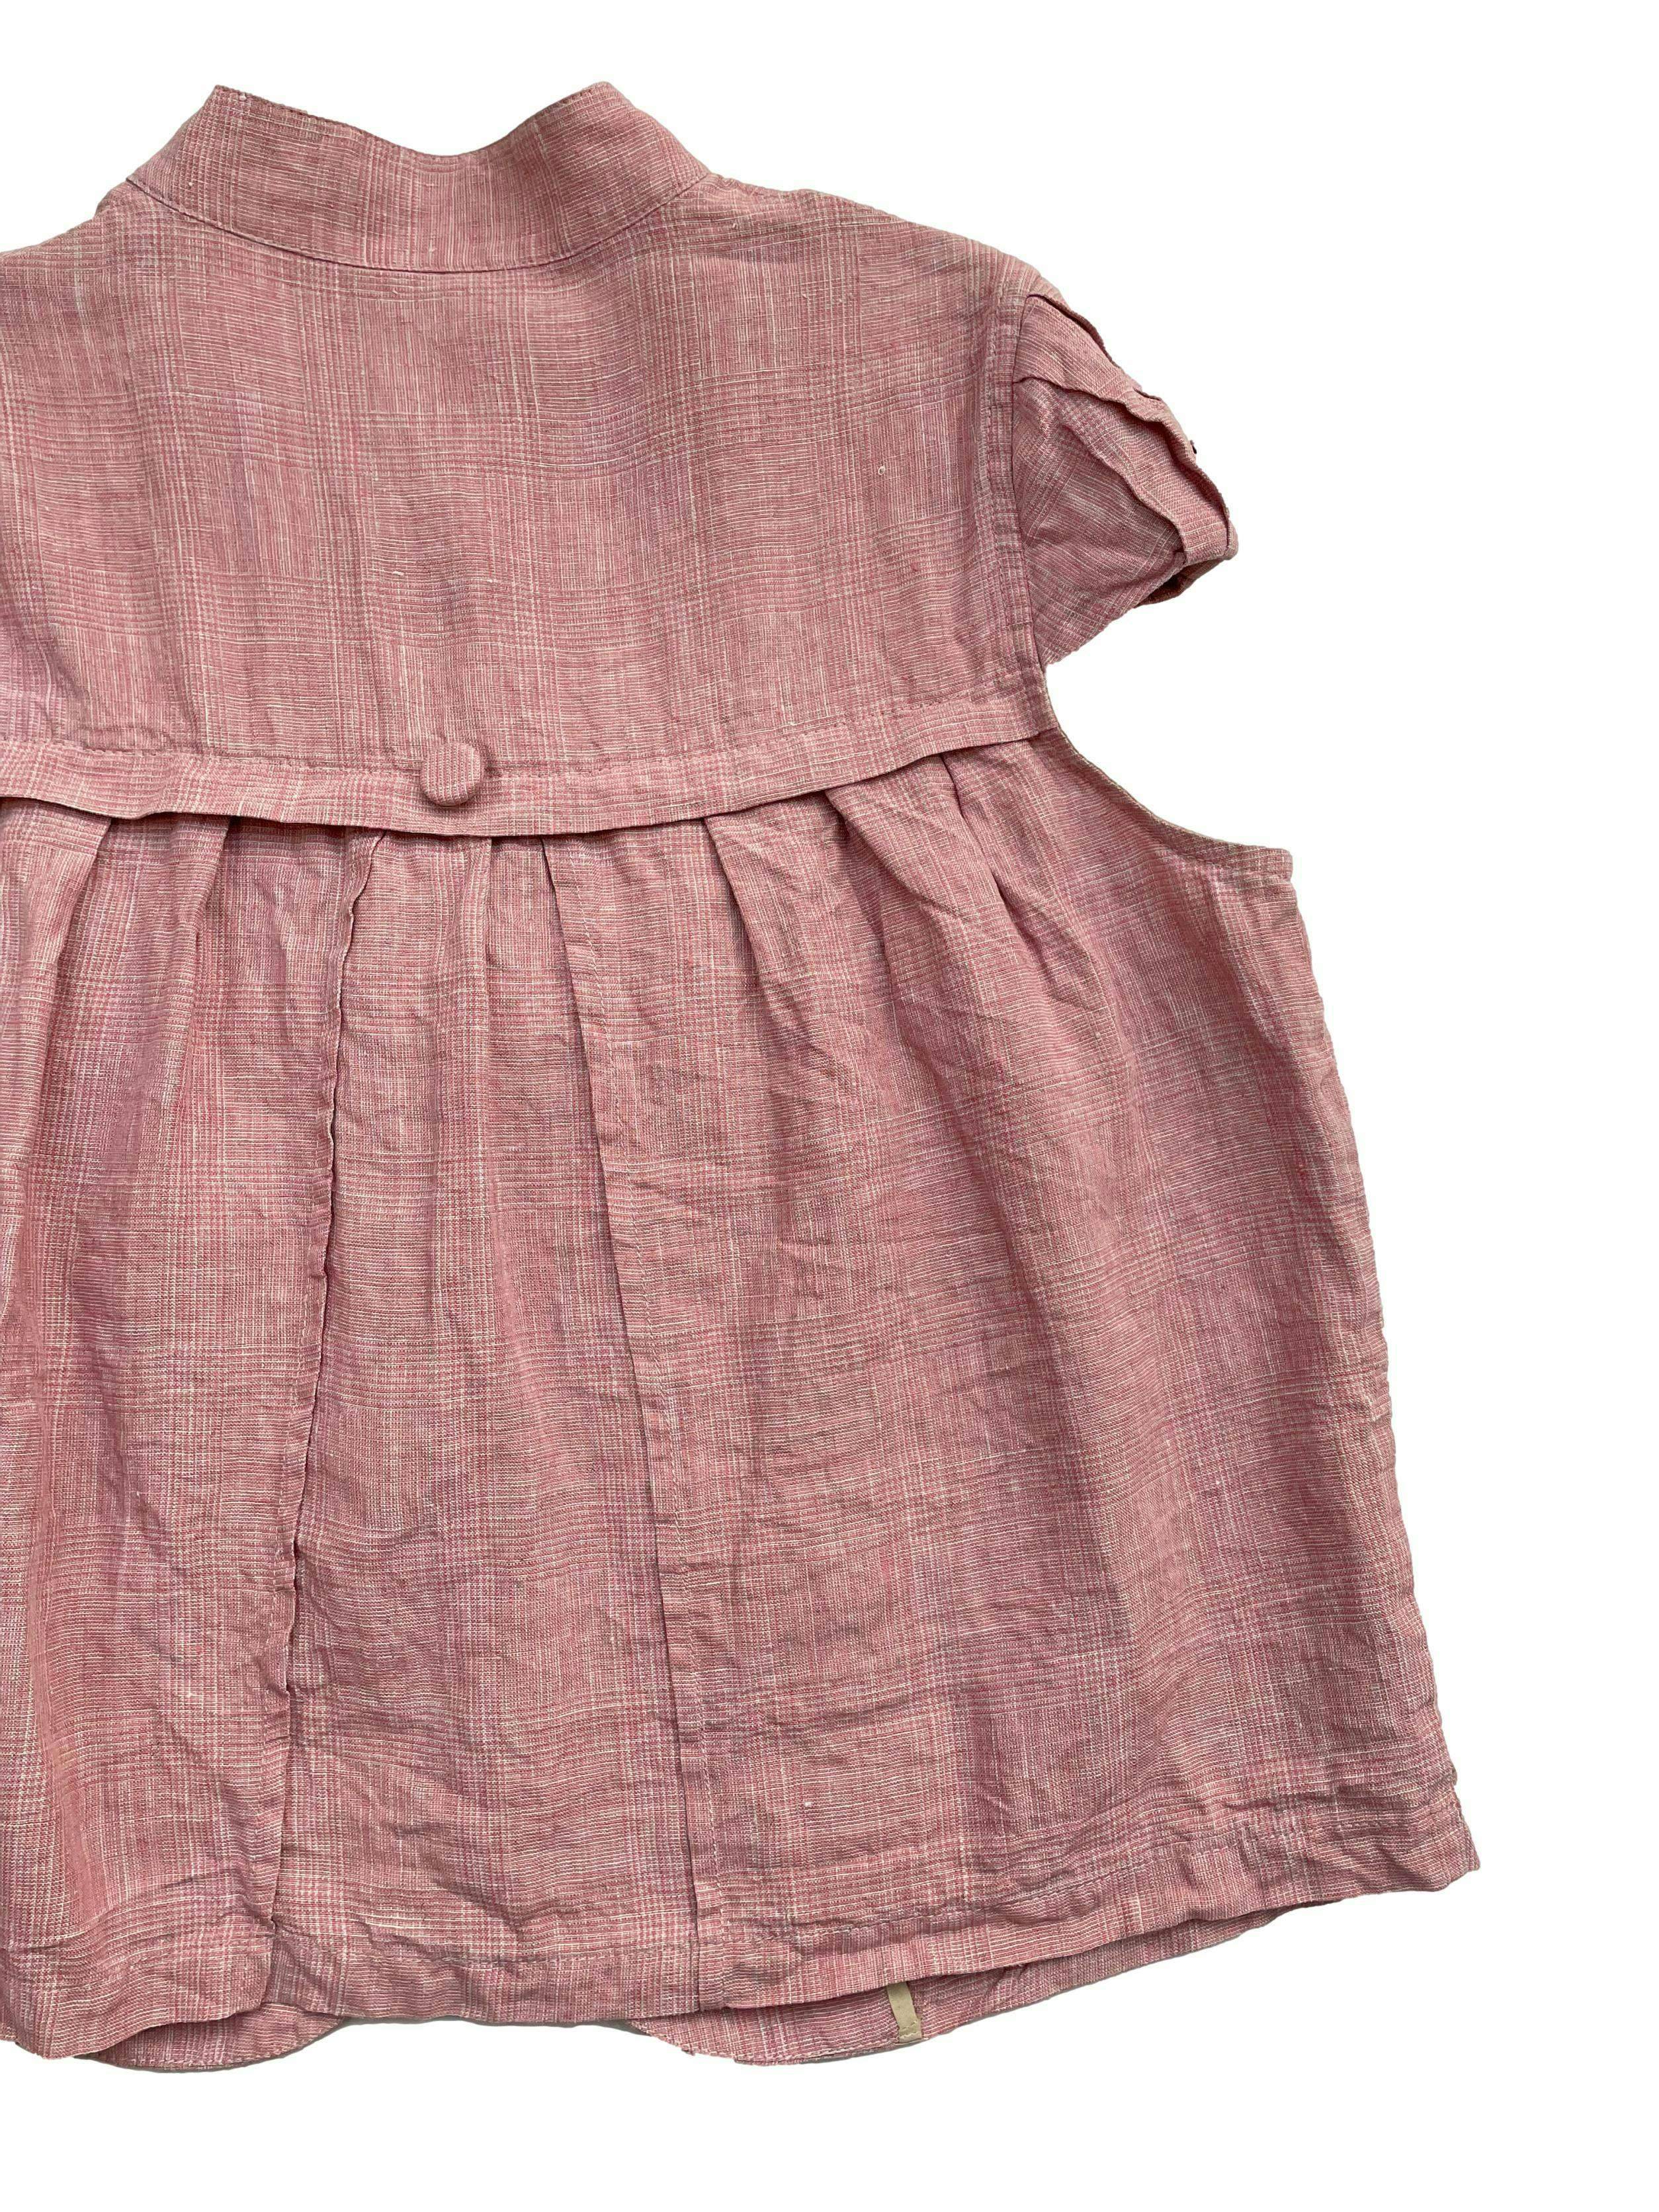 Casaca Michell Belau 100% lino jaspeado rosa y crema. Con botones forrados, dos bolsillos, pliegues frontales y en mangas. Busto 110cm, Largo 50cm.